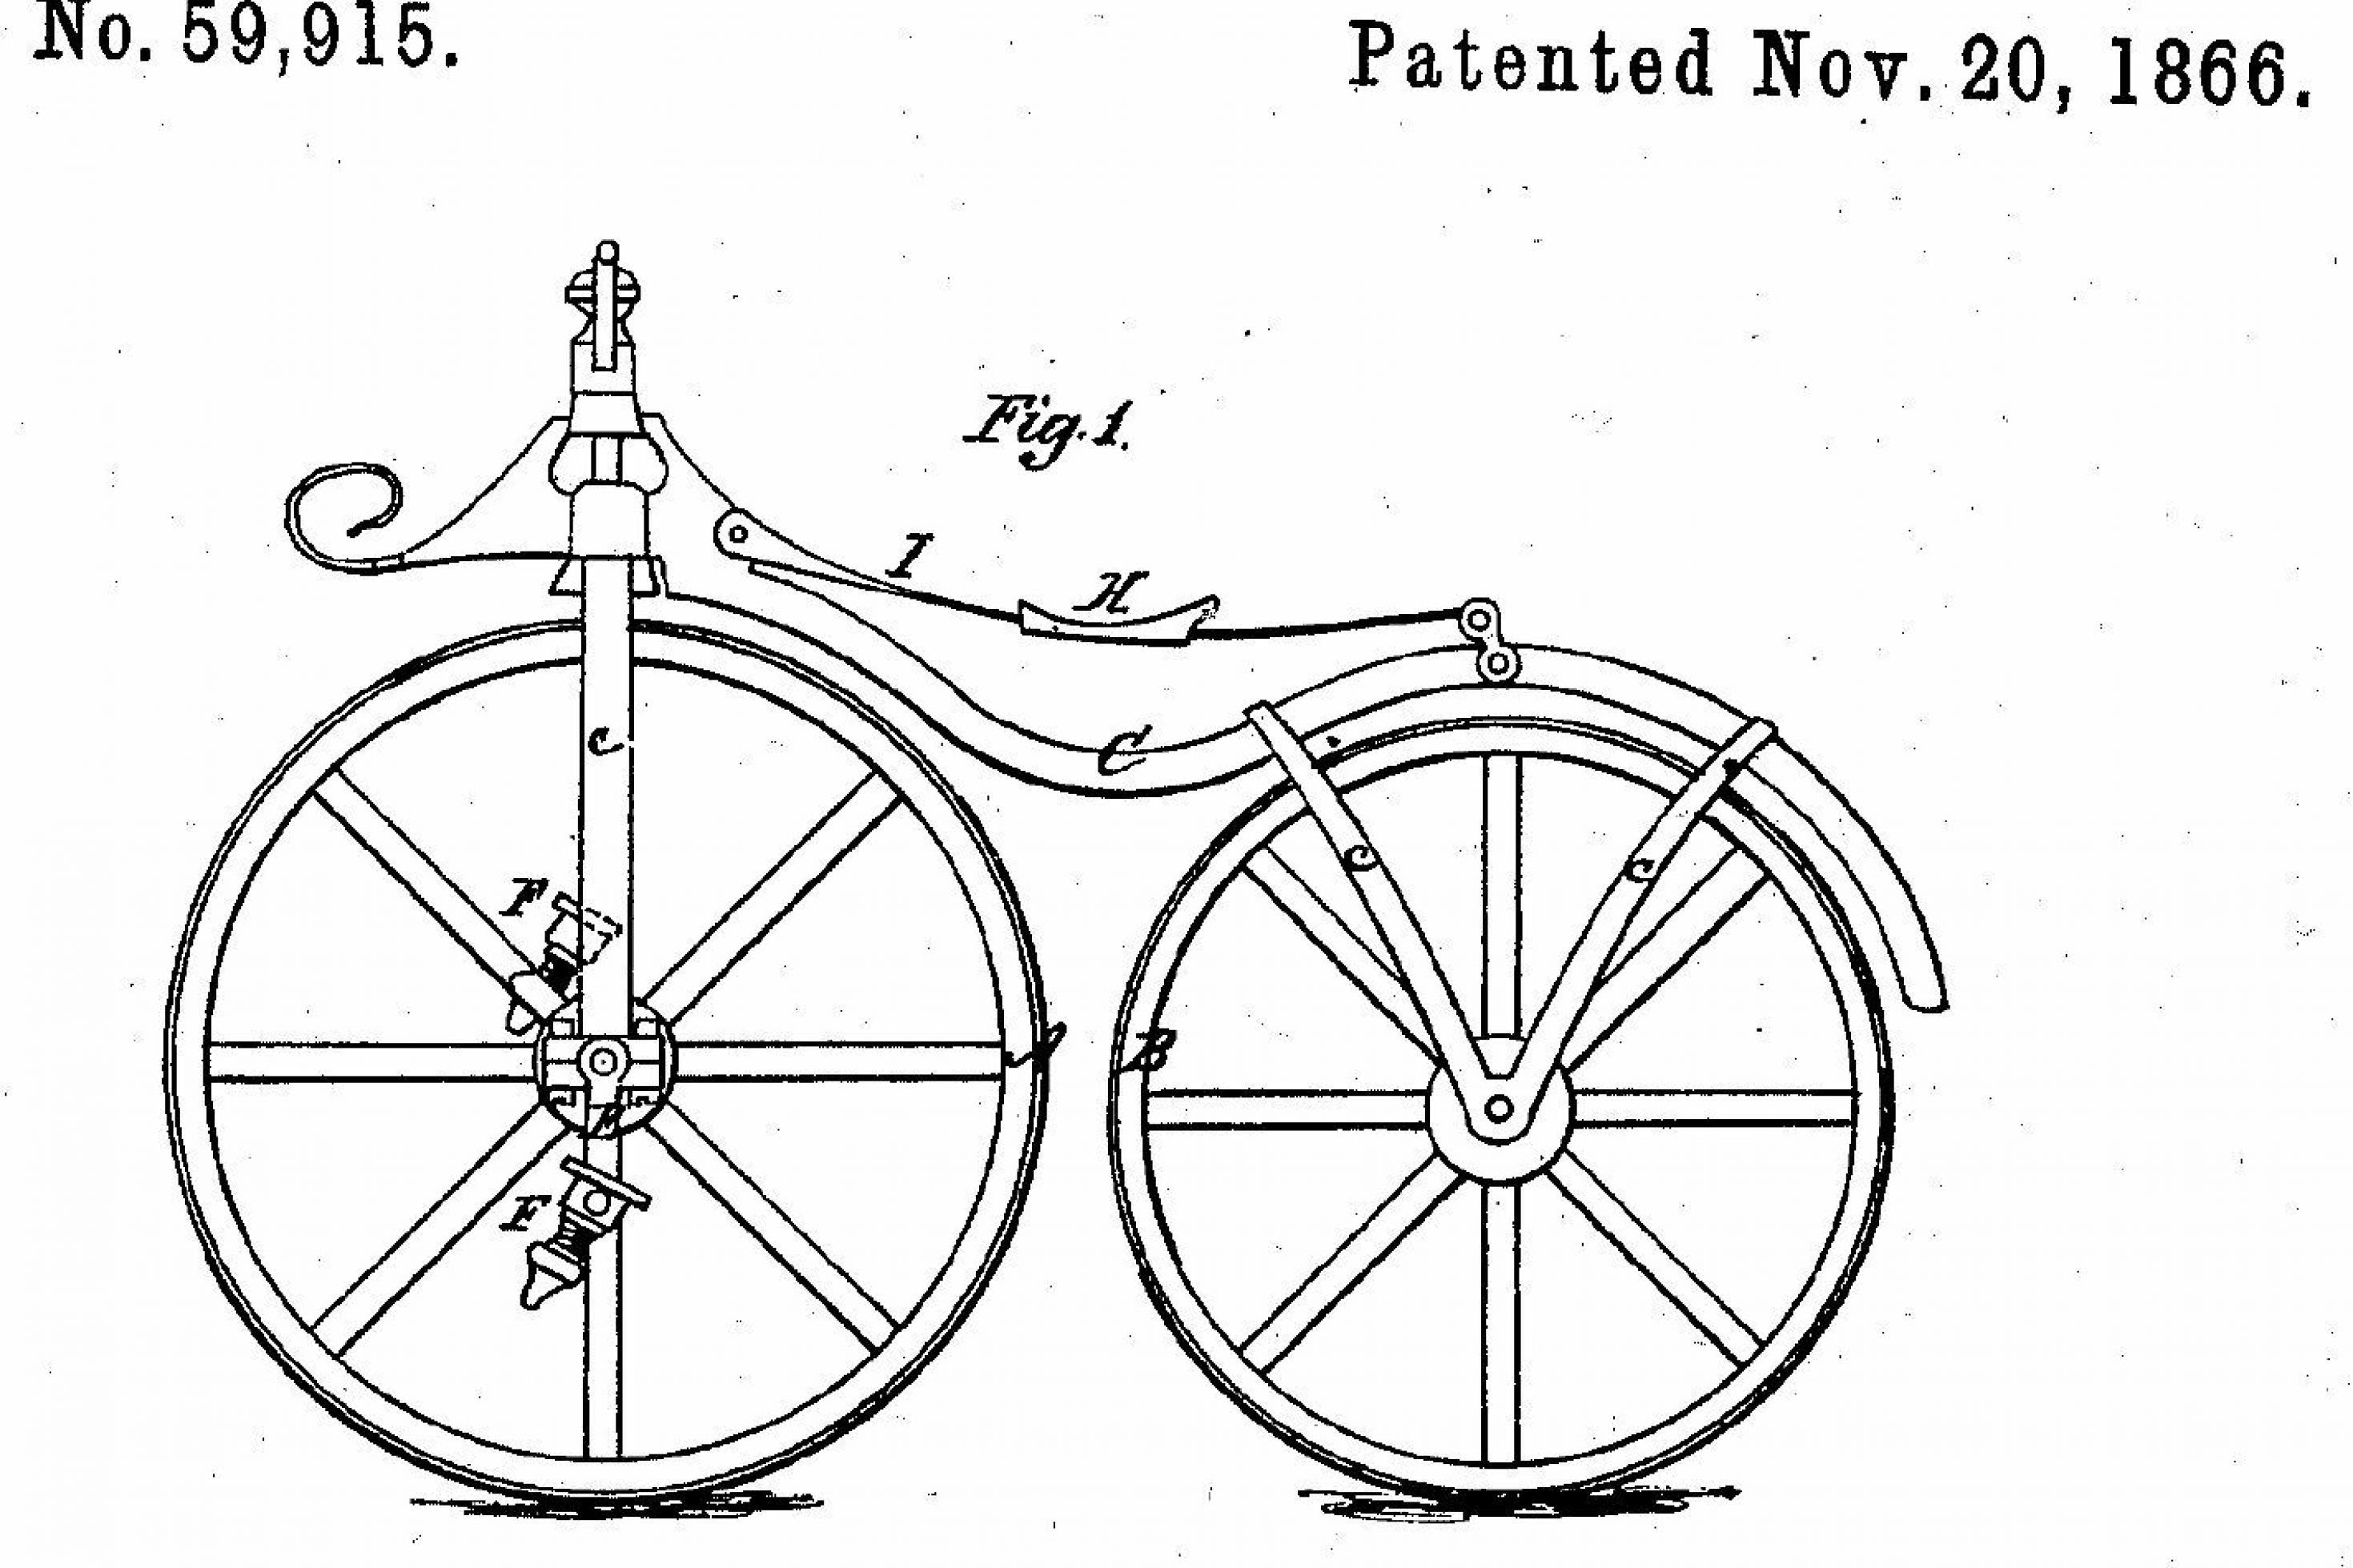 Zeichnung eines mit Tretkurbeln versehenen sogenannten Knochenschüttler-Fahrrads, dessen Räder eisenbeschlagen waren, im Rahmen des US-Patents Nummer 59.915, datiert den 20.11.1866.